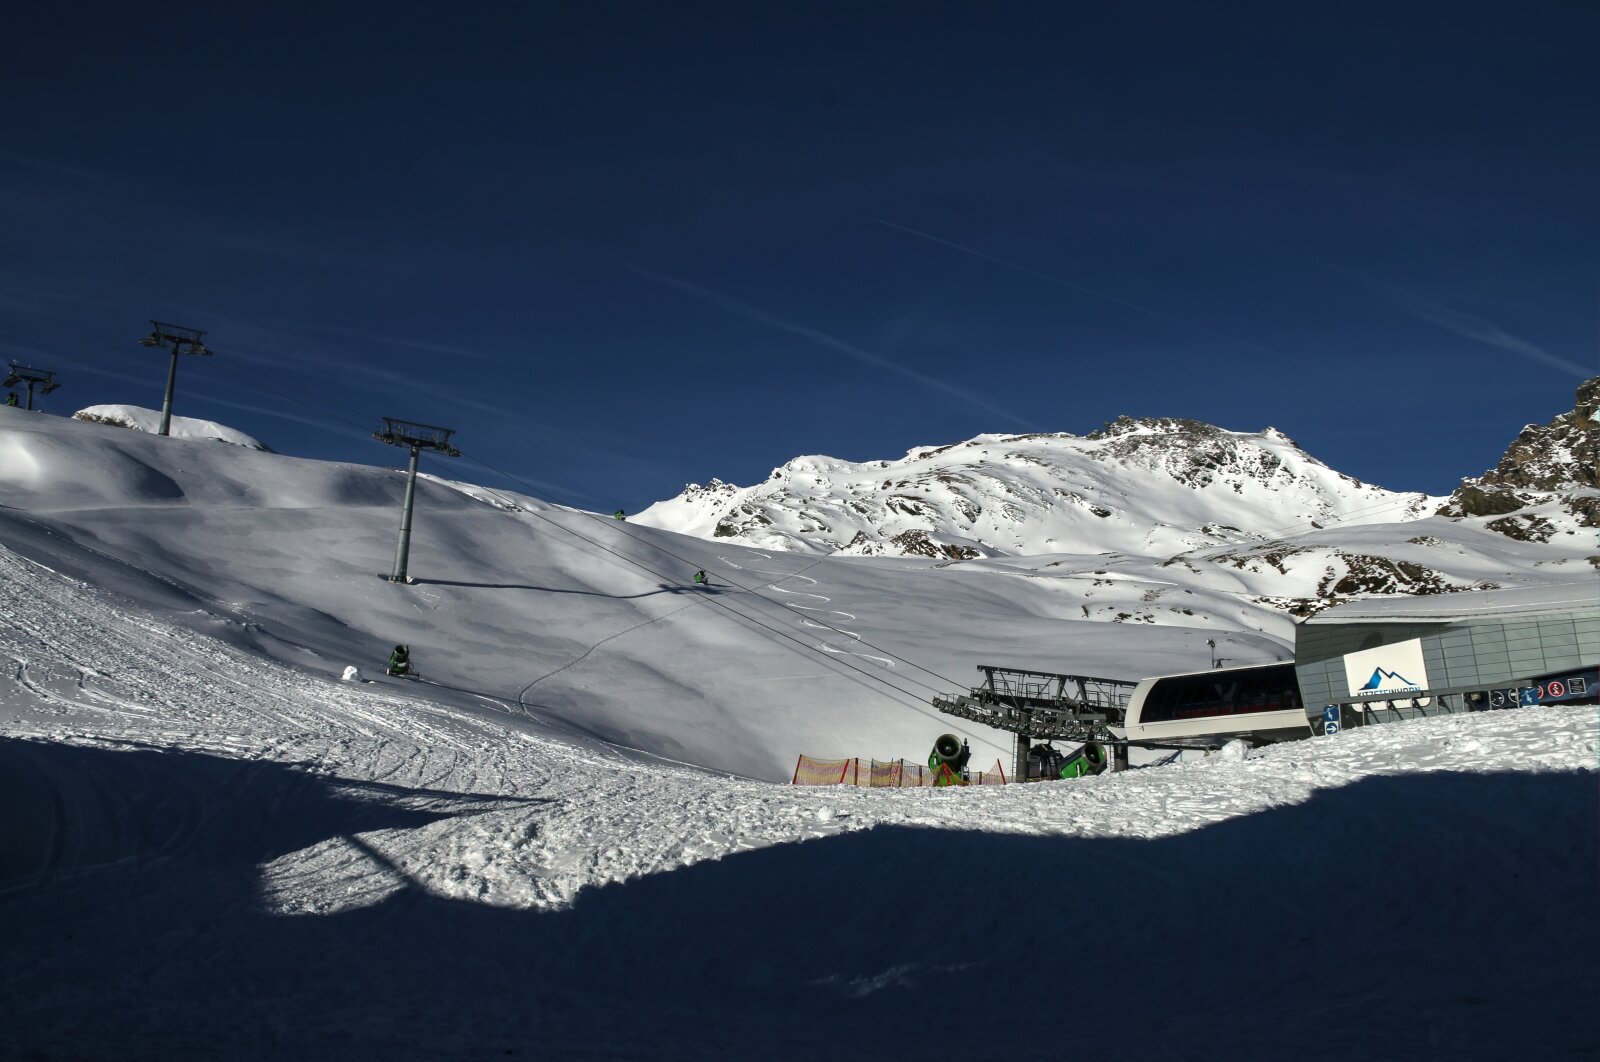 Az Alpincenter (2452 m) környéke is téliesen néz ki - Fotó: Stánicz Balázs (Stani)